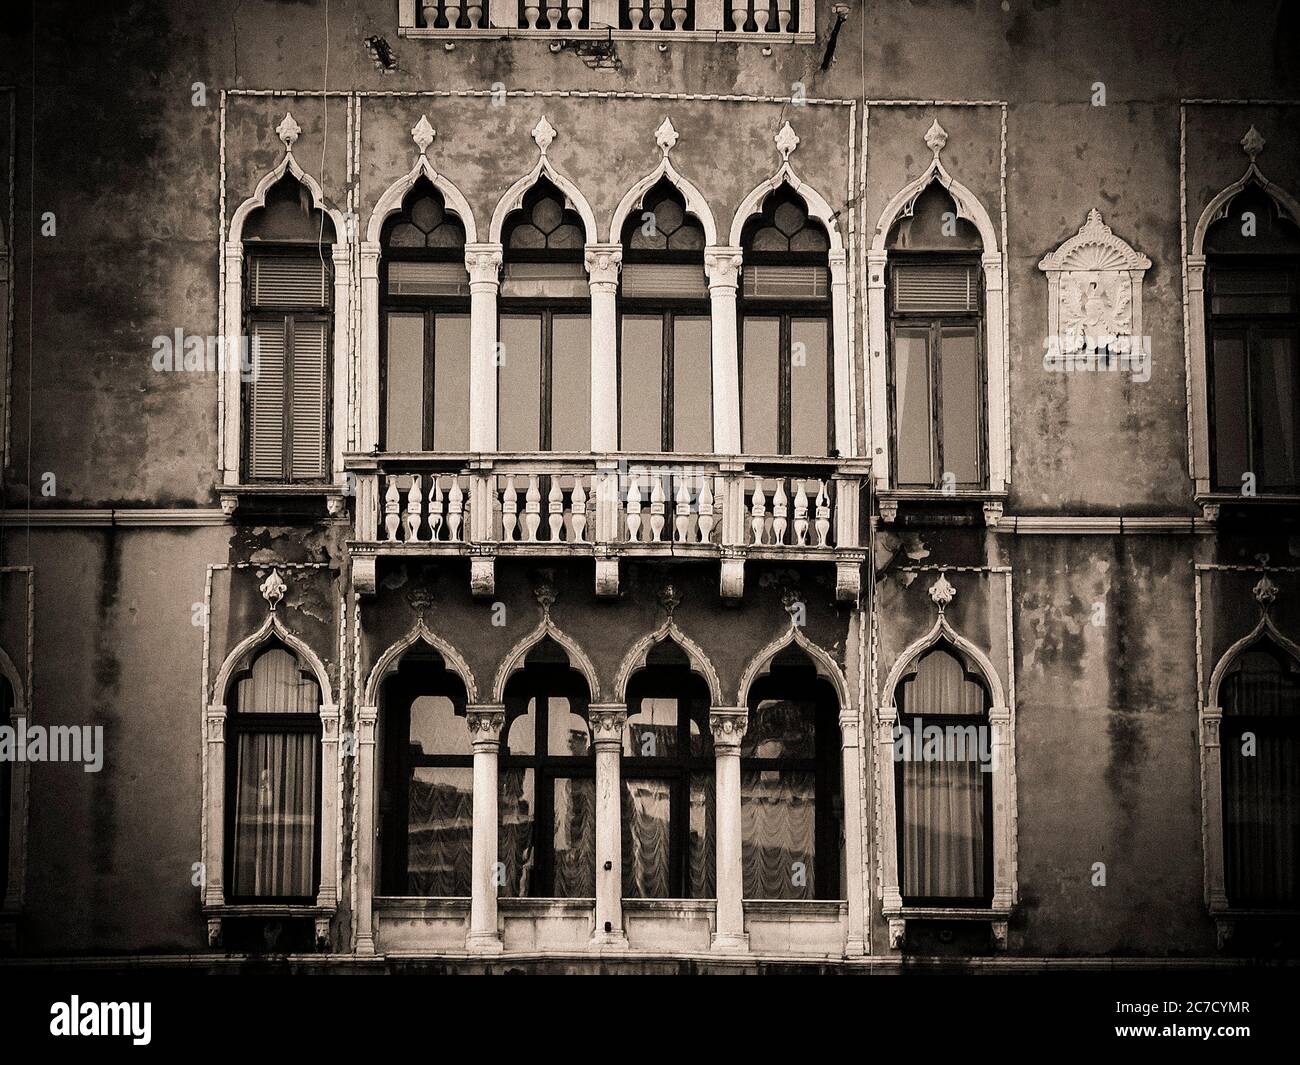 Facade of a Venetian palace. Venice . Italy Stock Photo